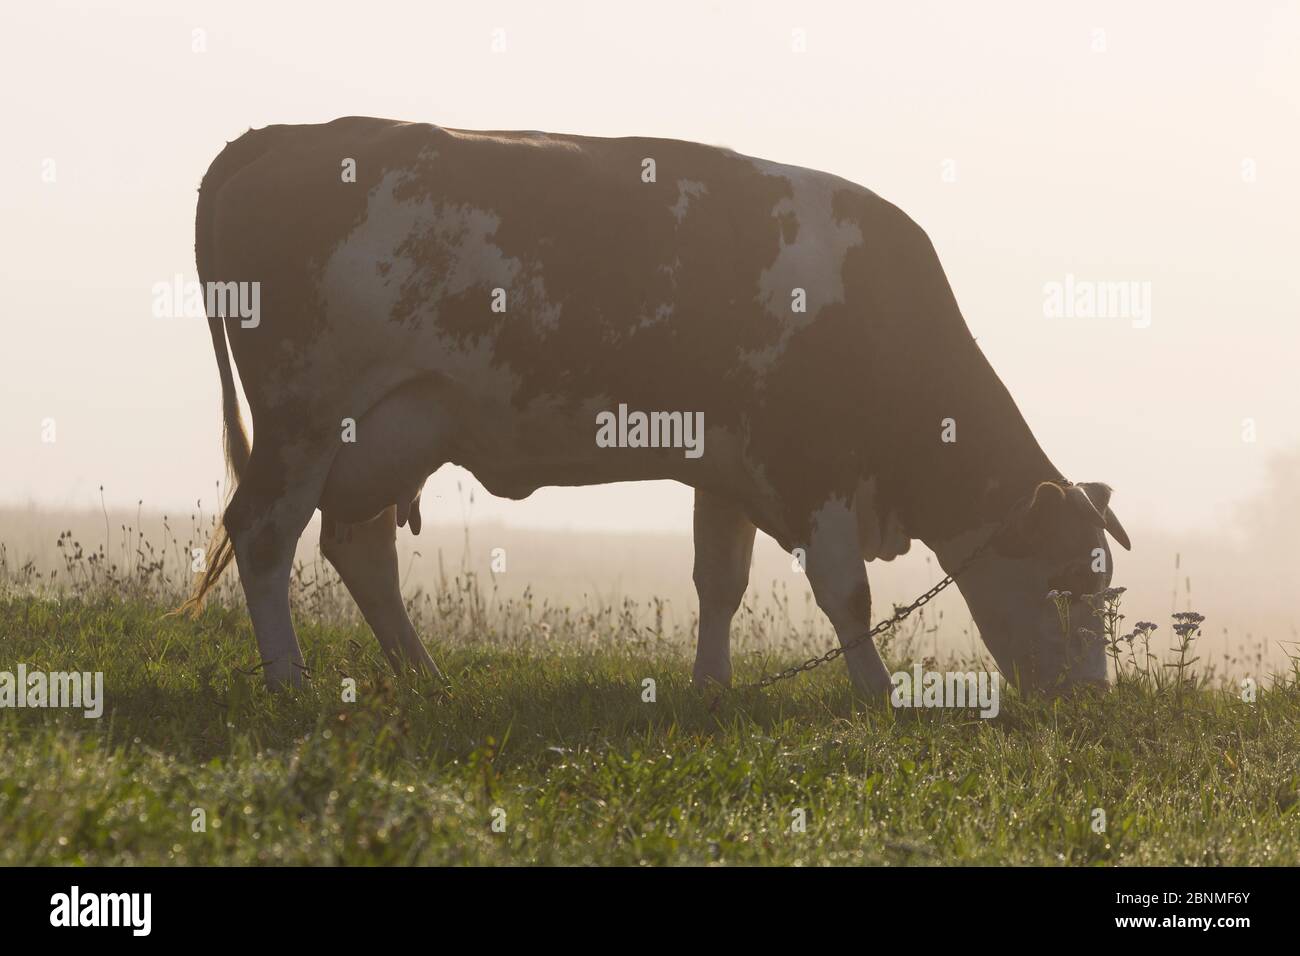 Europe, Poland, Silesian Voivodeship, Istebna, grazing cow Stock Photo